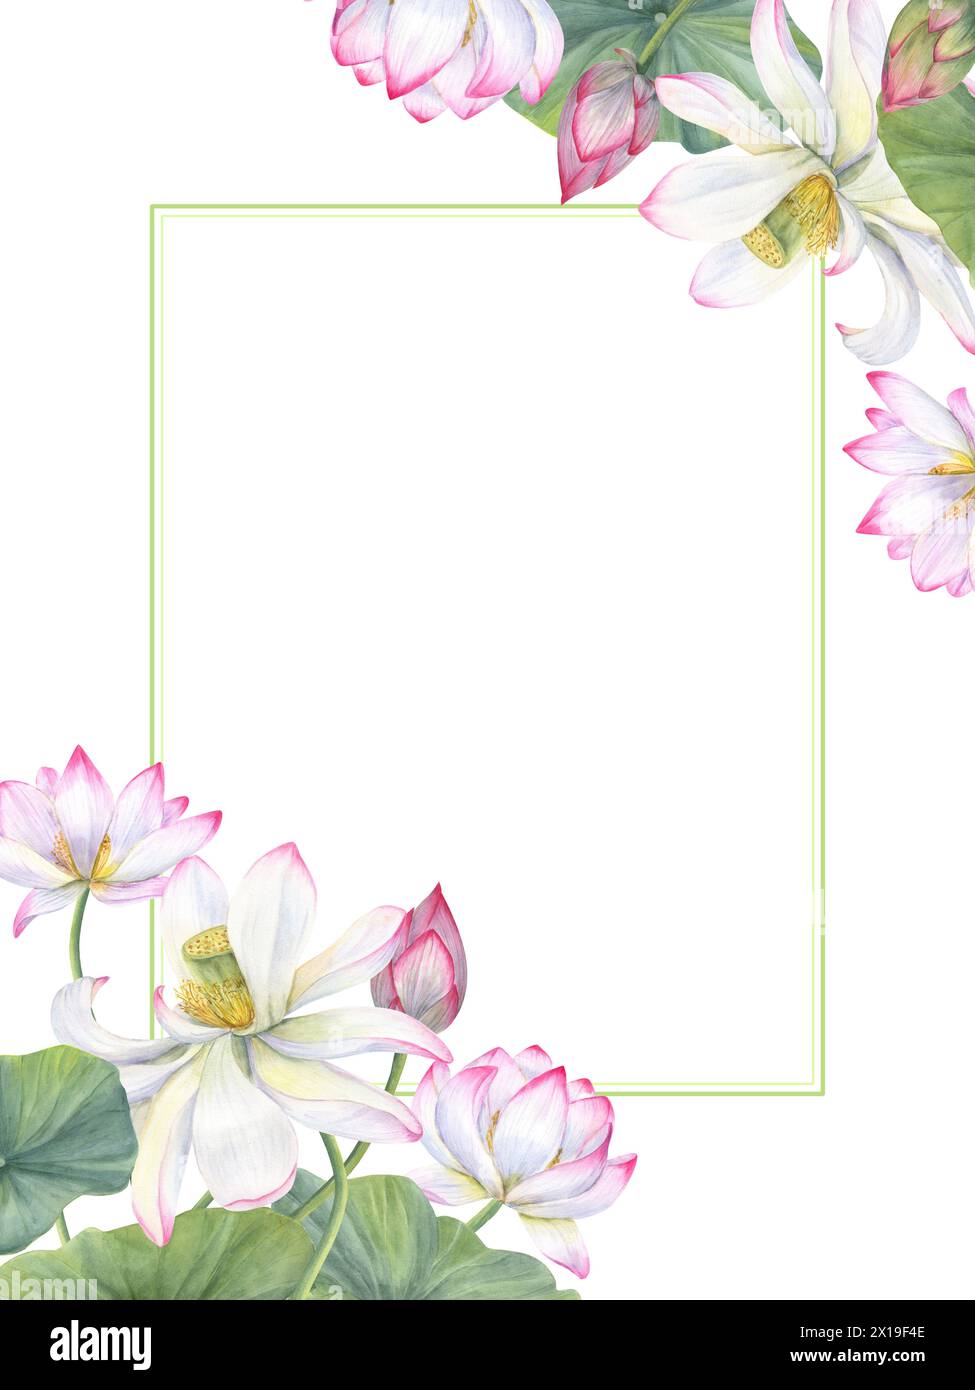 Orientalische Lotusblüten. Strauß rosafarbener weißer Wasserlilien, grüne Blätter. Horizontaler Rahmen aus Seerose. Blumenkomposition mit Kopierraum für Text. Stockfoto